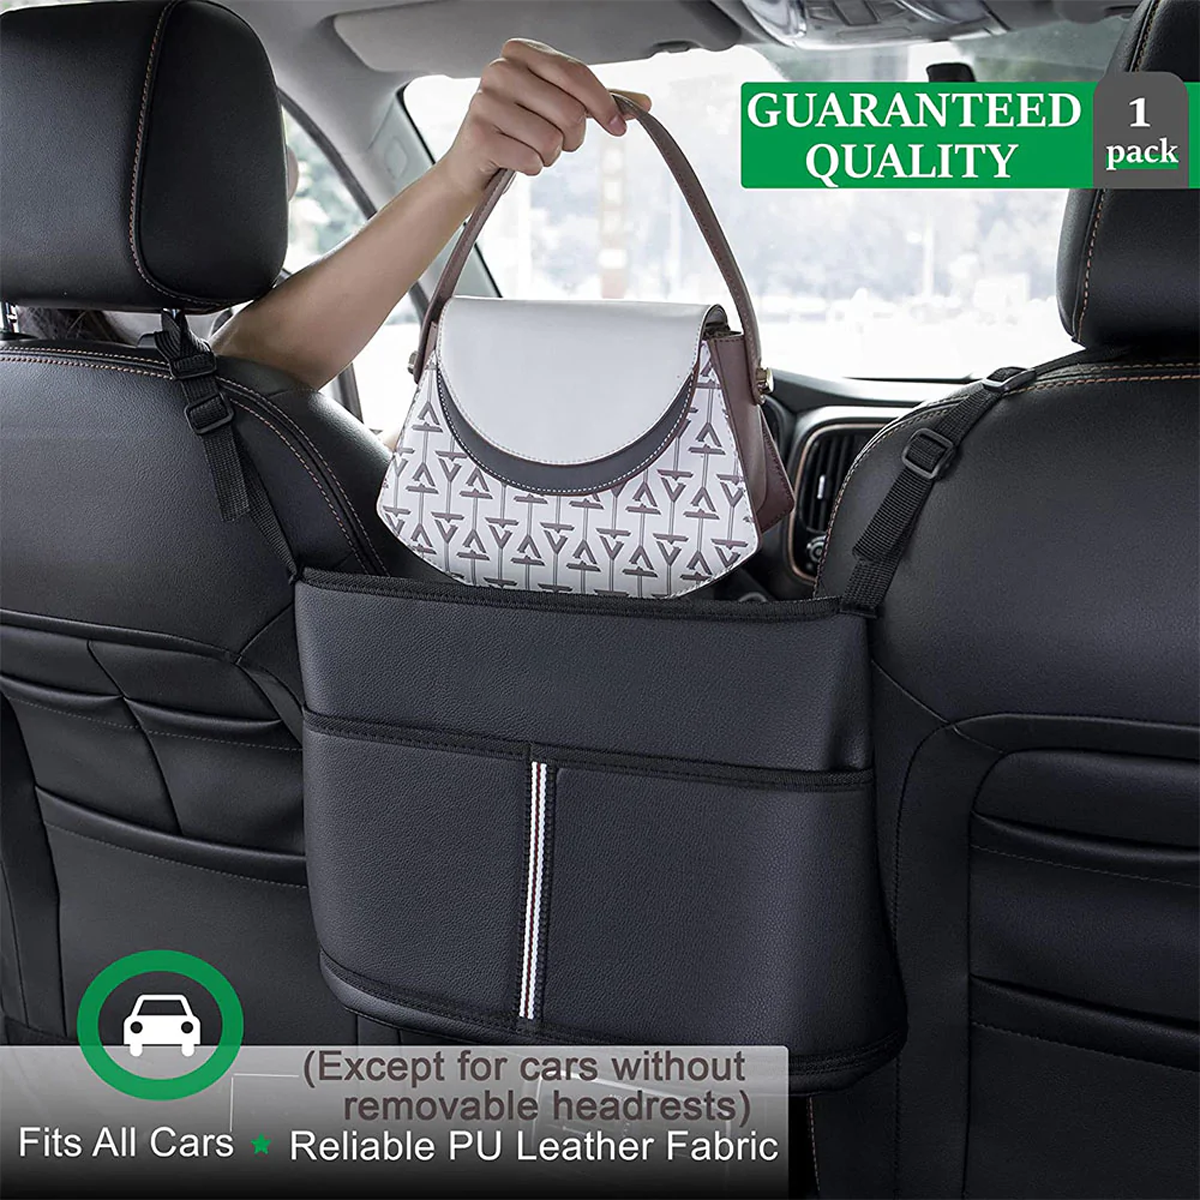 Car Purse Holder for Car Handbag Holder Between Seats Premium PU Leather, Custom Fit For Car, Hanging Car Purse Storage Pocket Back Seat Pet Barrier DLFM223